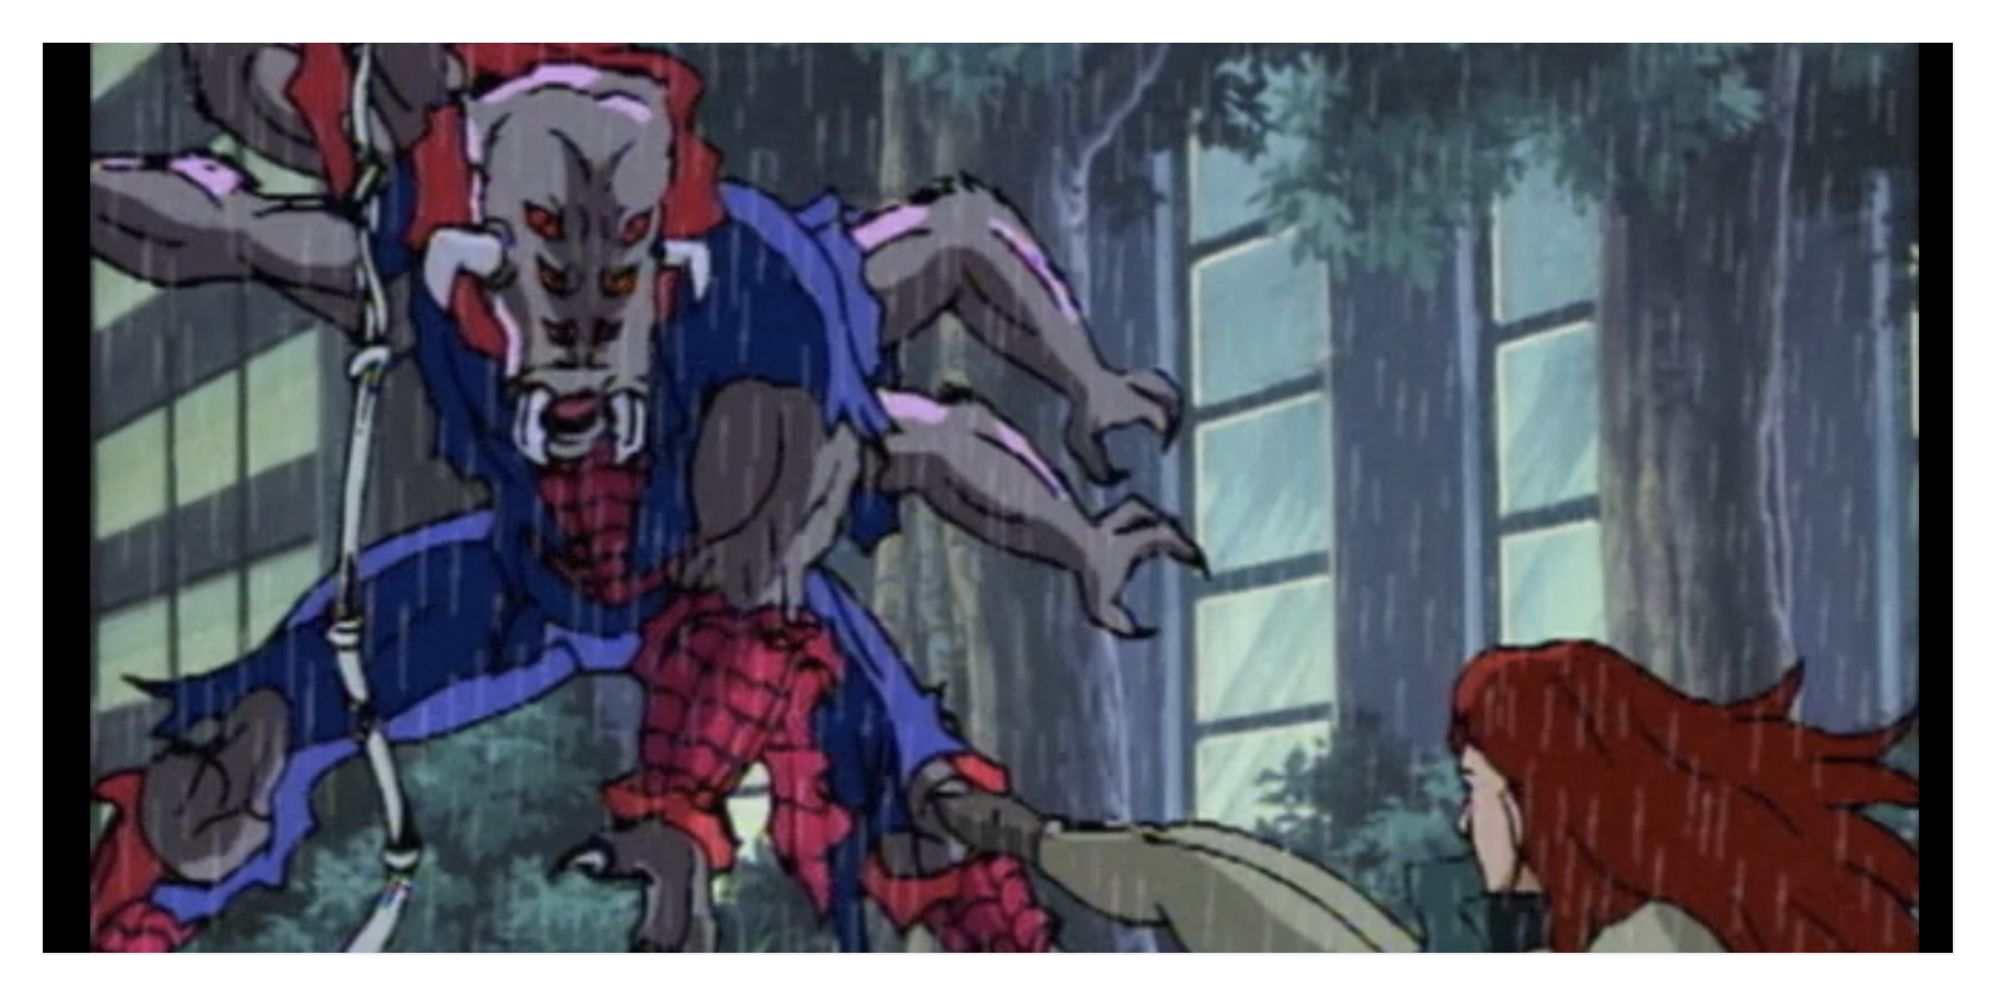 Spider-Man's mutation into Man-Spider